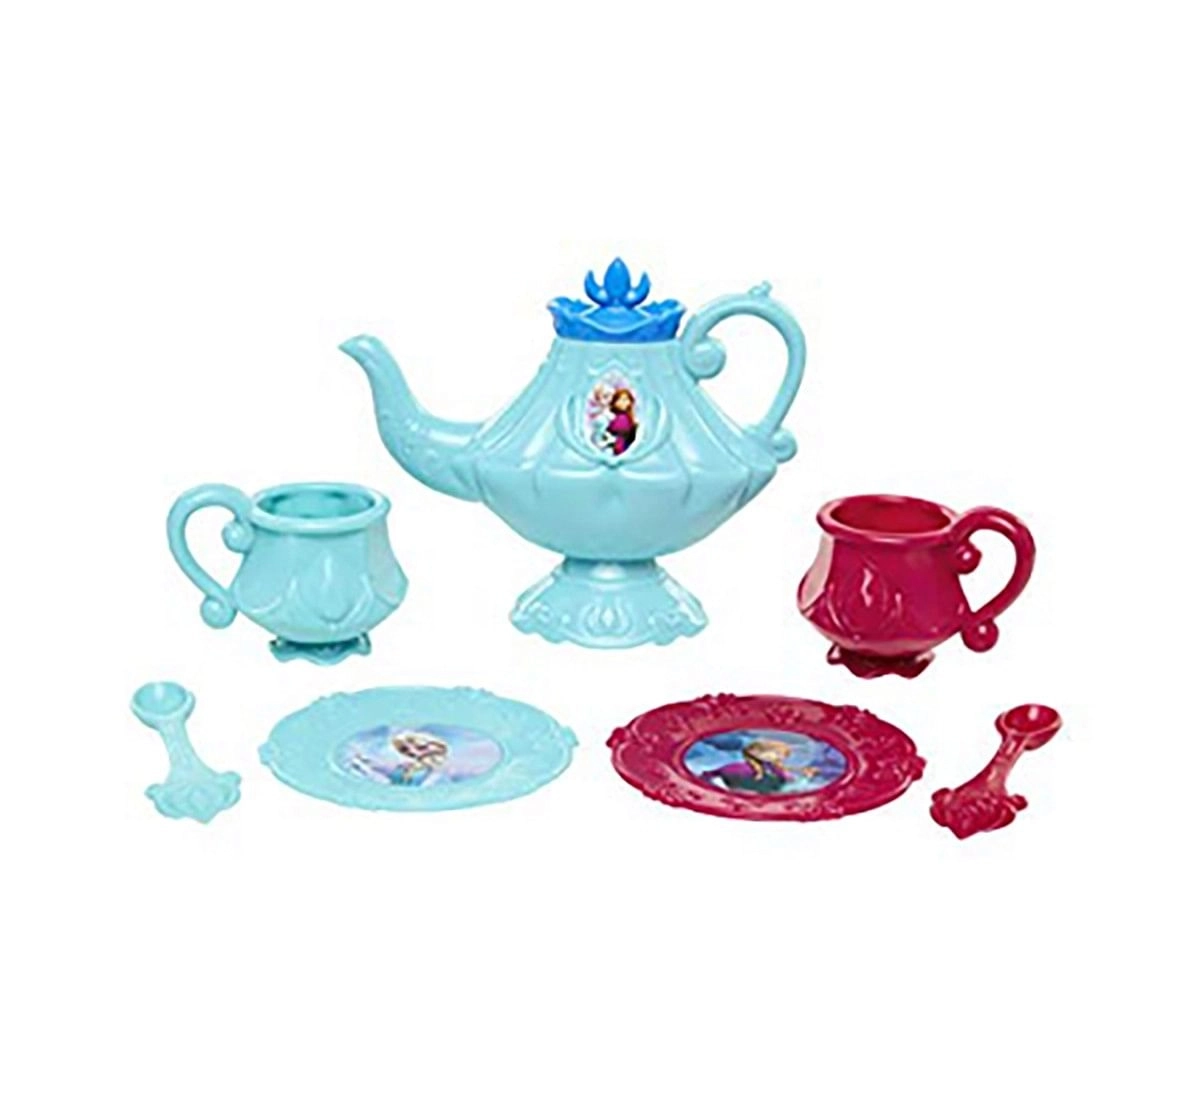 Disney Frozen Tea Set - 8Pcs Dolls & Accessories for age 8Y+ 